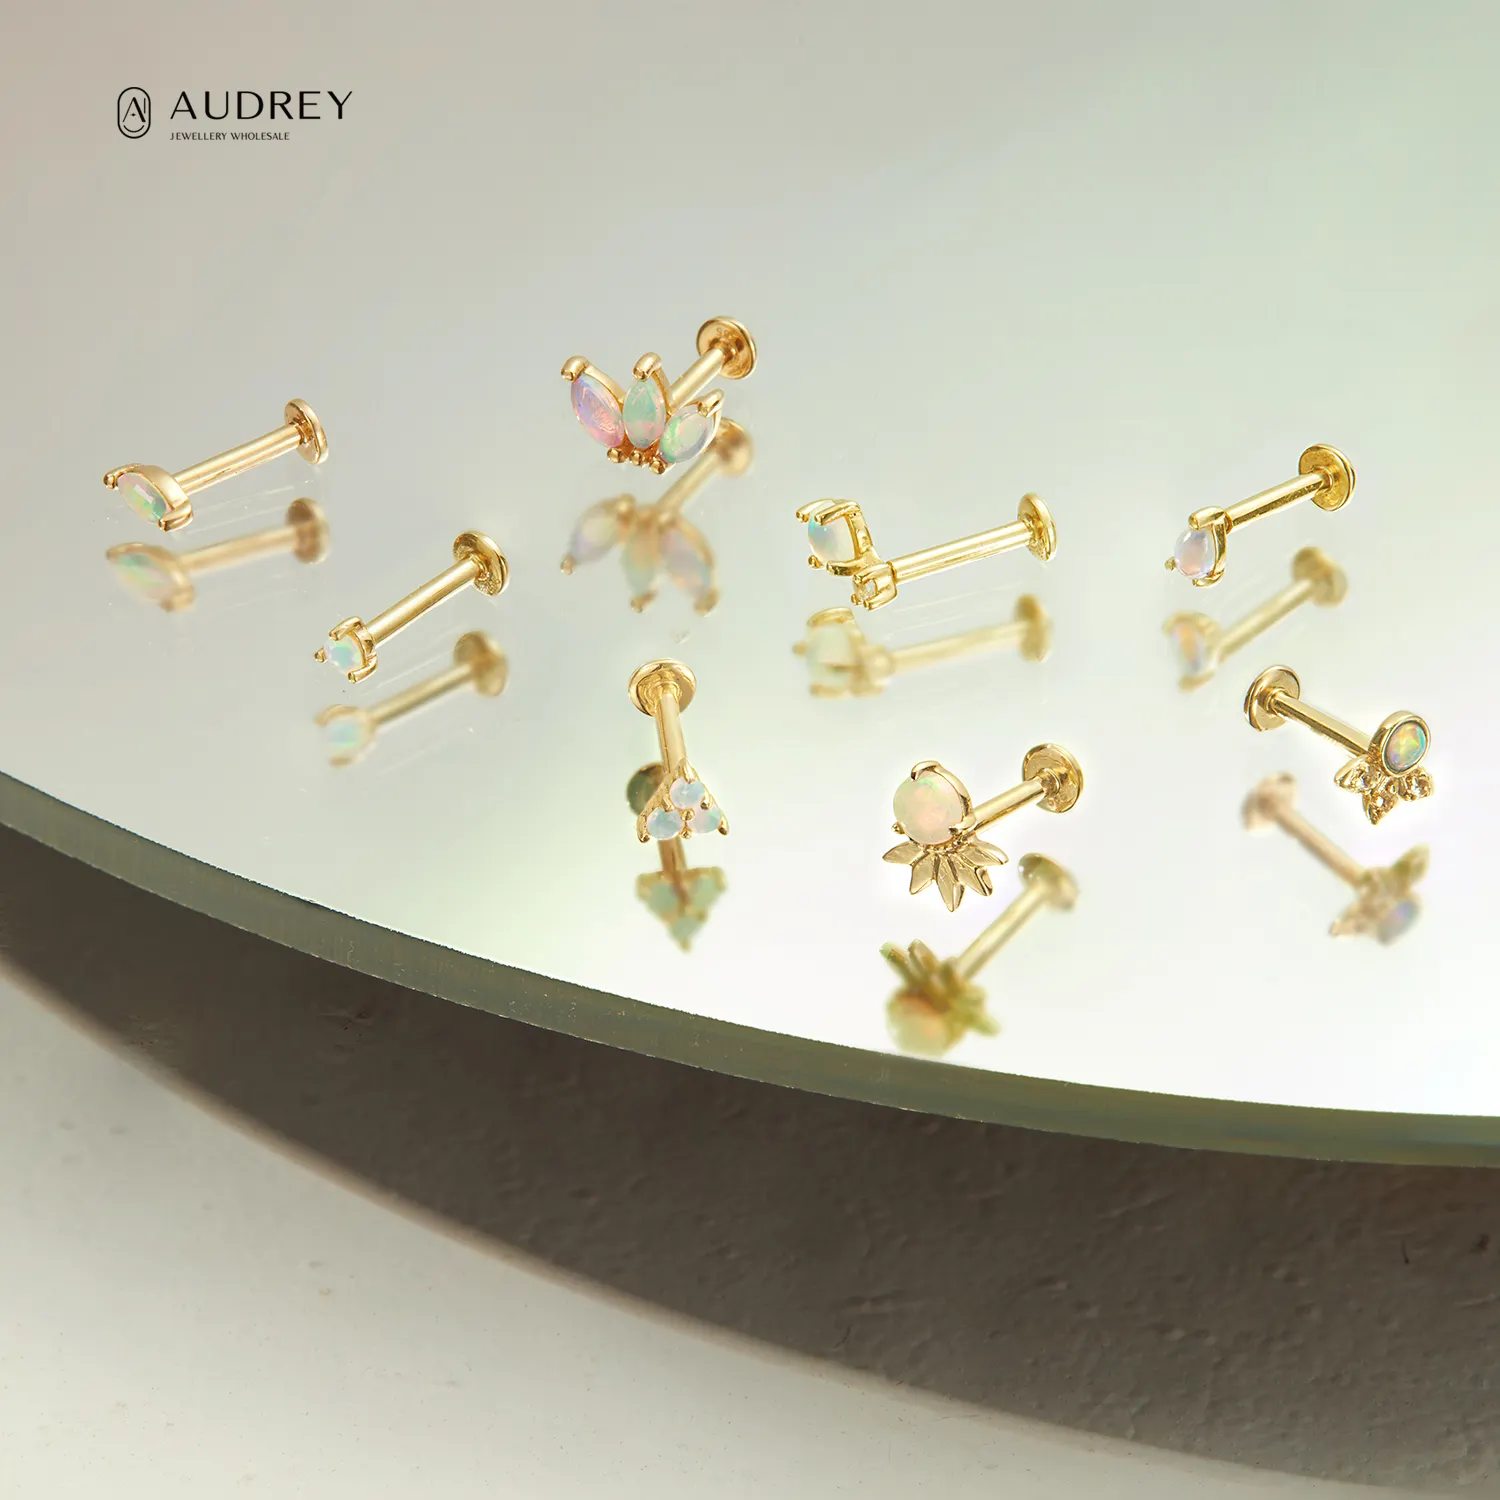 Audrey Diamond Opal 14K Solid Gold Body Fine Jewelry Piercing Jewelry Flat-back Helix Screw Studs Cartilage Earring